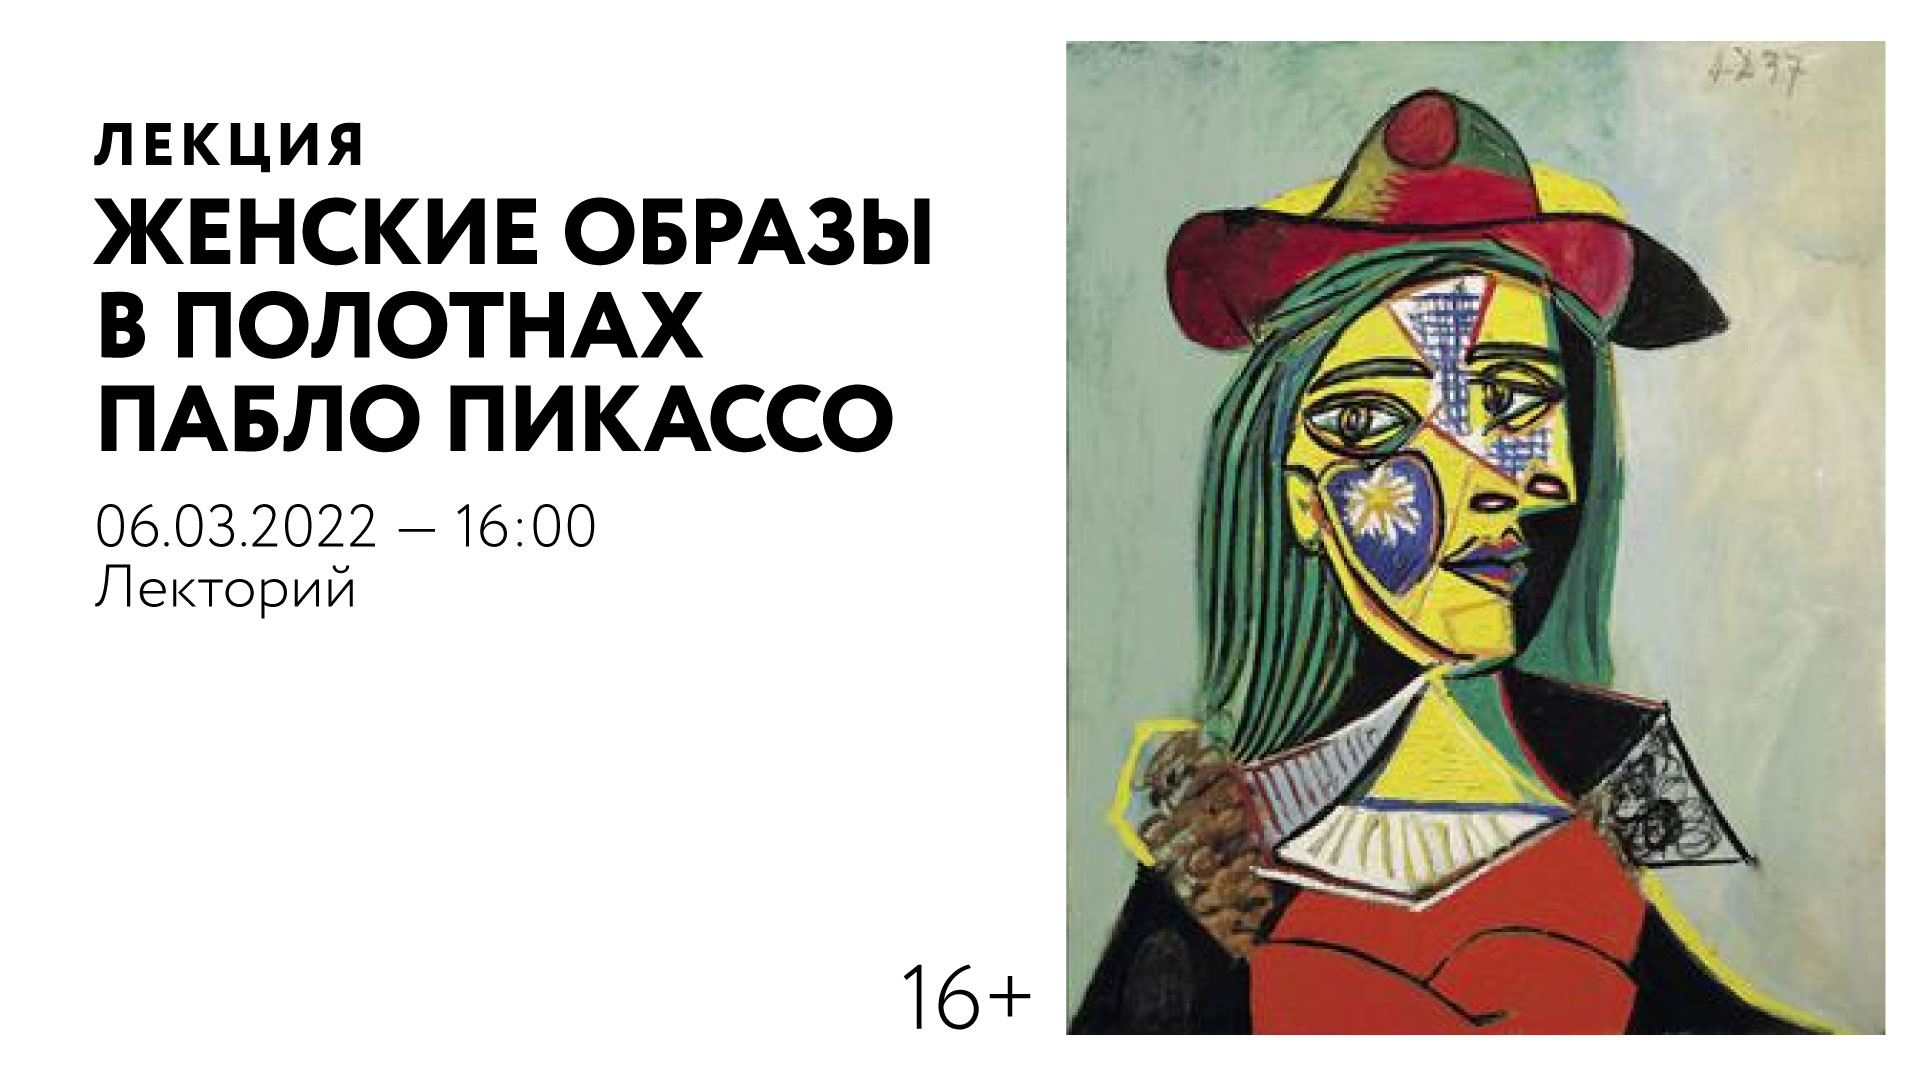 Лекция «Женские образы в полотнах Пабло Пикассо»